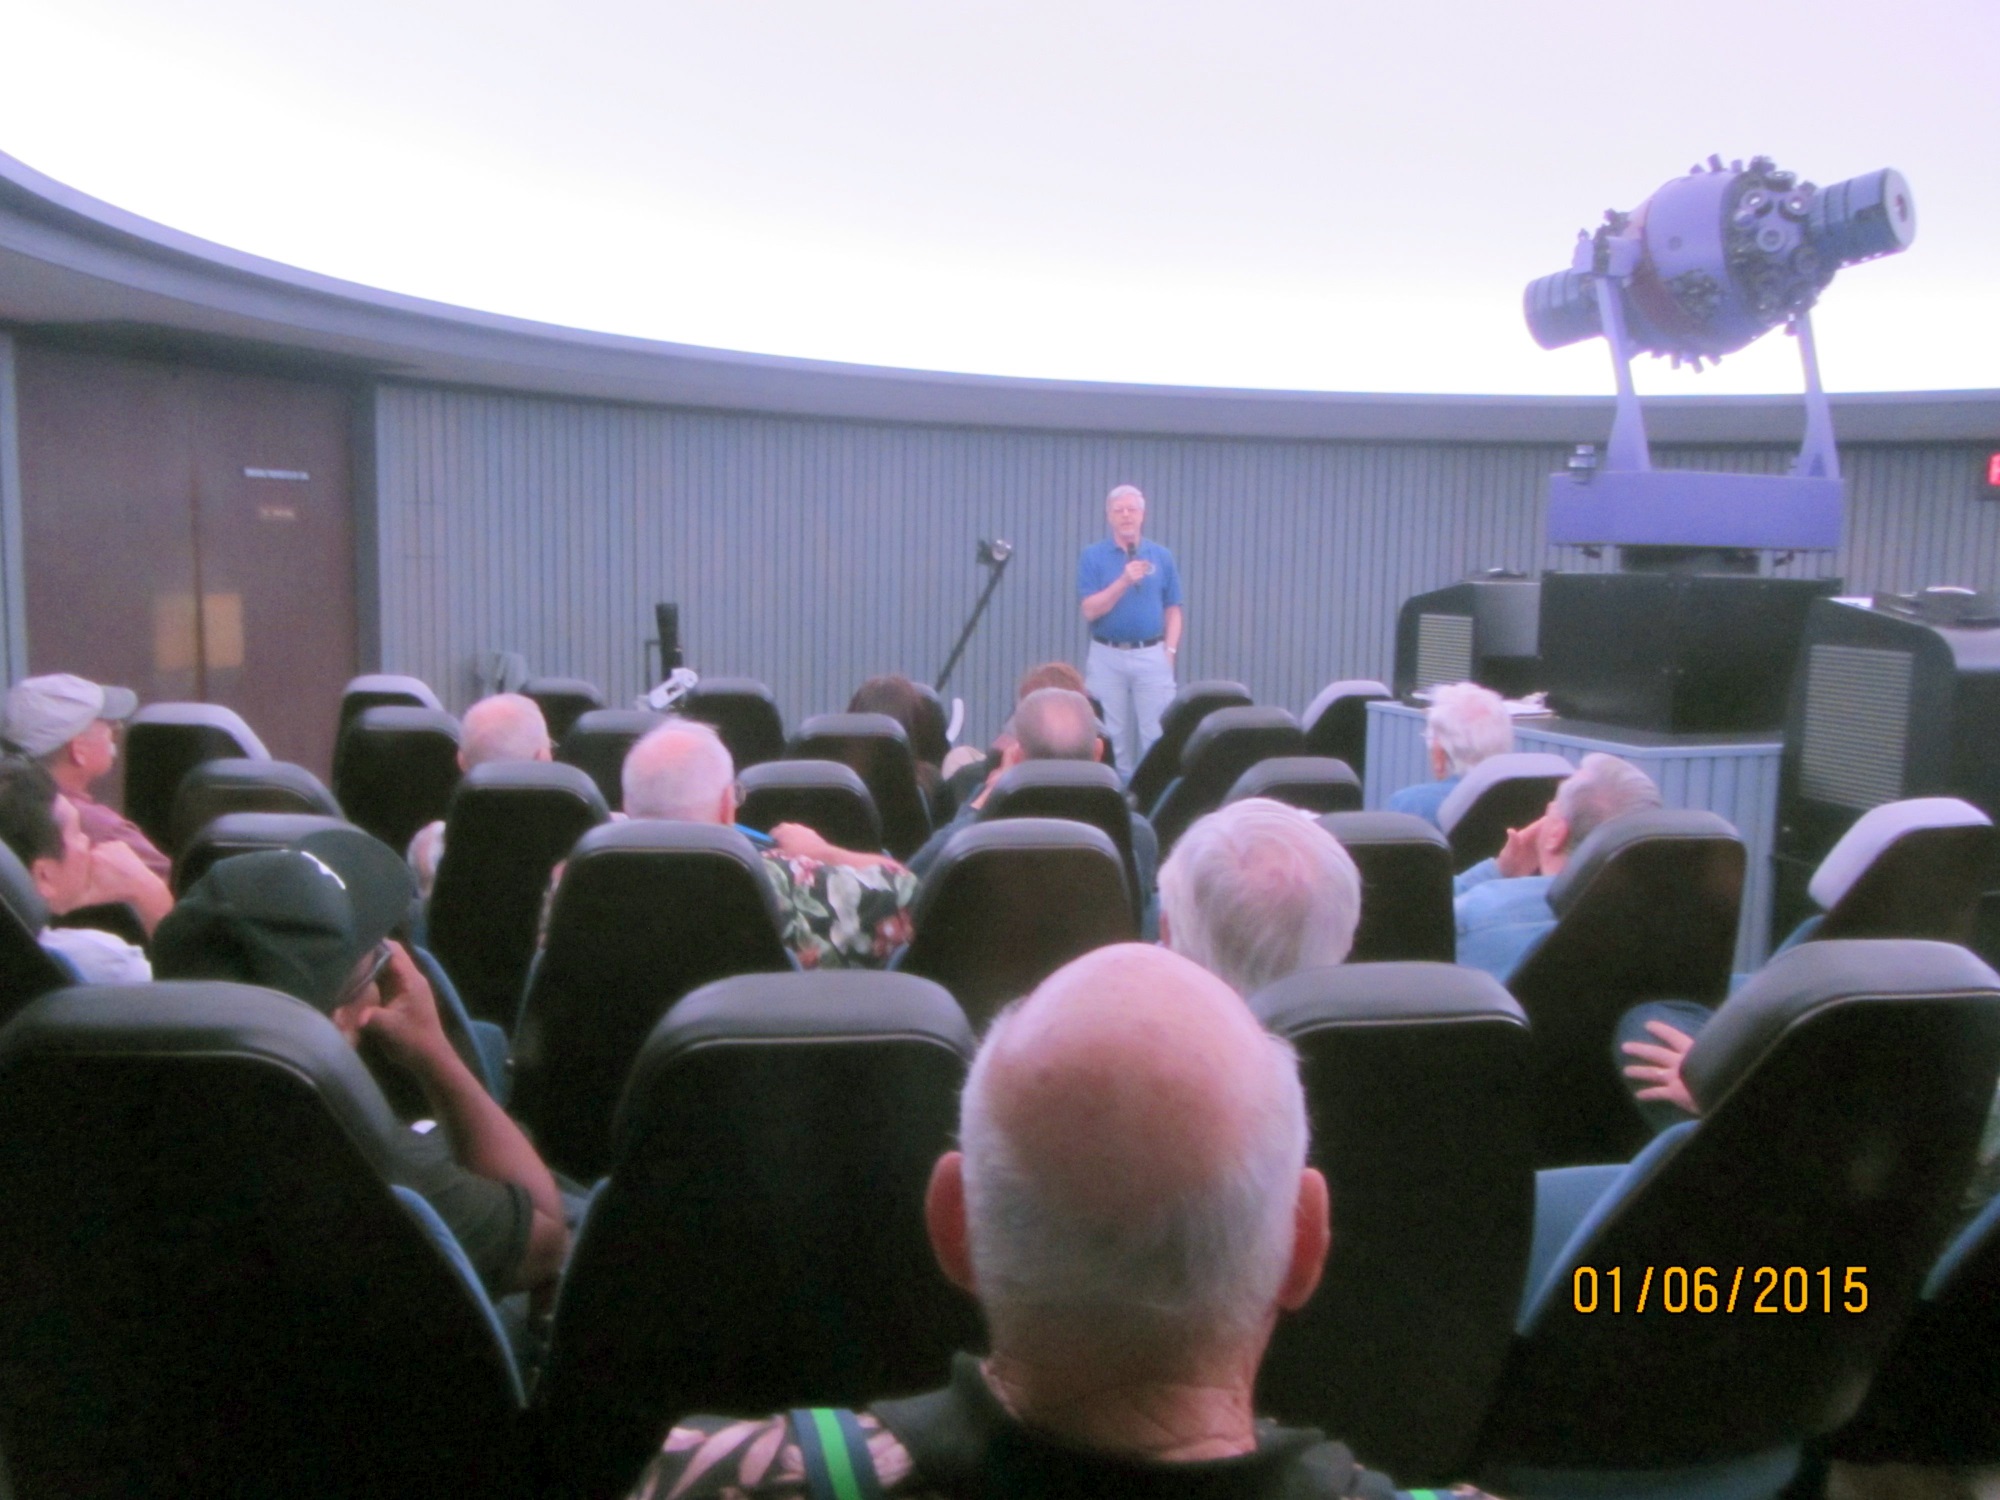 In the Bishop Planetarium in Honolulu, Hawaii